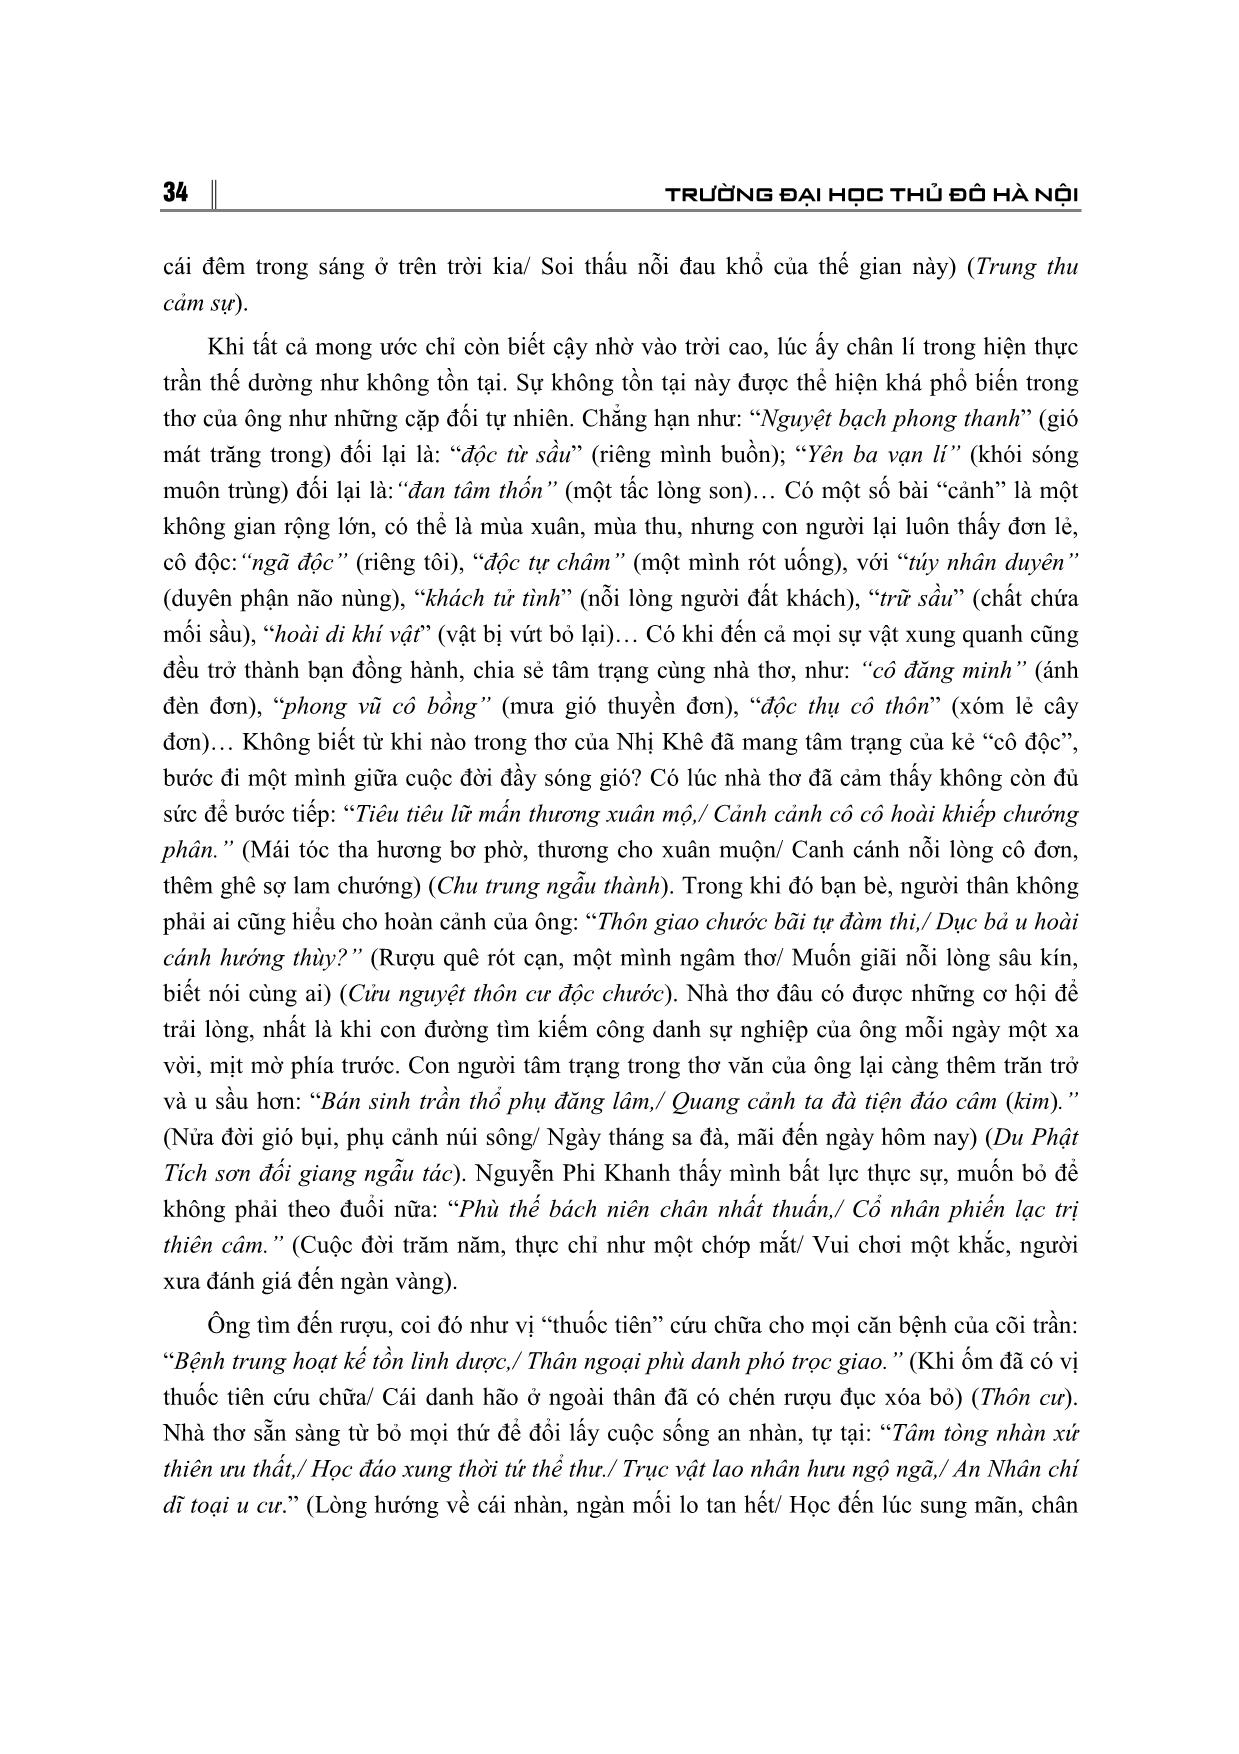 Thơ văn Nguyễn Phi Khanh - Nỗi niềm trăn trở về bản thân, thời đại và cuộc sống của nhân dân trang 3